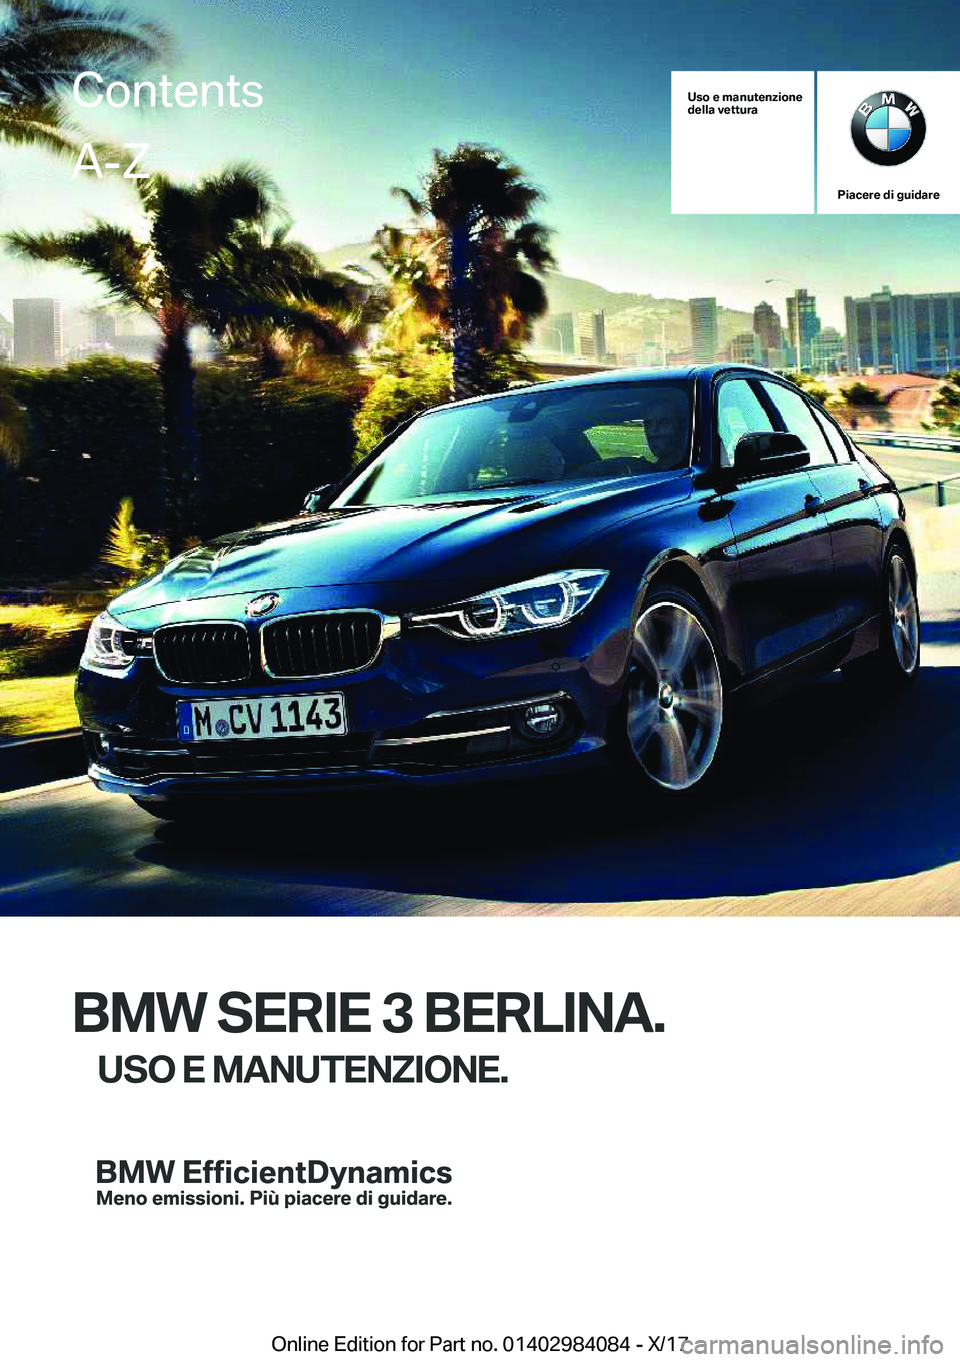 BMW 3 SERIES 2018  Libretti Di Uso E manutenzione (in Italian) �U�s�o��e��m�a�n�u�t�e�n�z�i�o�n�e
�d�e�l�l�a��v�e�t�t�u�r�a
�P�i�a�c�e�r�e��d�i��g�u�i�d�a�r�e
�B�M�W��S�E�R�I�E��3��B�E�R�L�I�N�A�.
�U�S�O��E��M�A�N�U�T�E�N�;�I�O�N�E�.
�C�o�n�t�e�n�t�s�A�